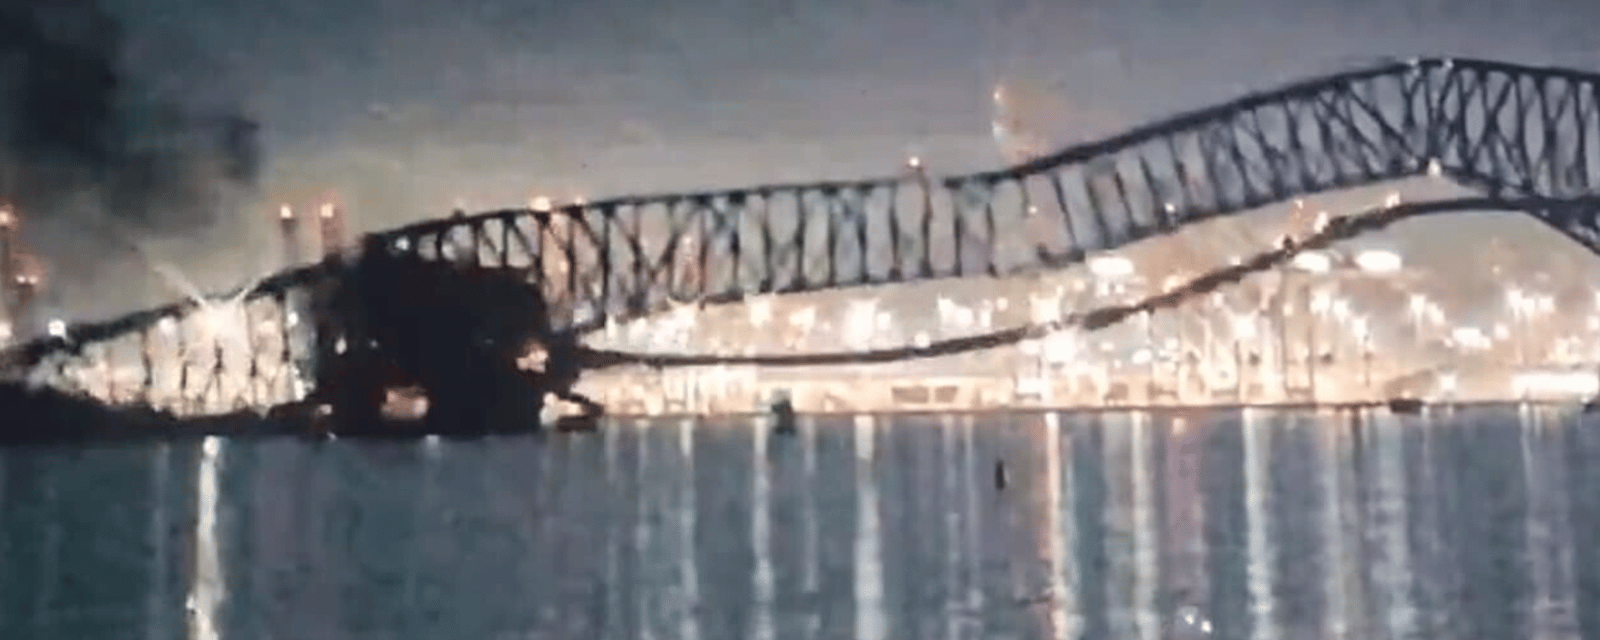 Pont effondré de Baltimore: De nouvelles informations dévoilées sur le navire et les personnes qui manquent à l'appel